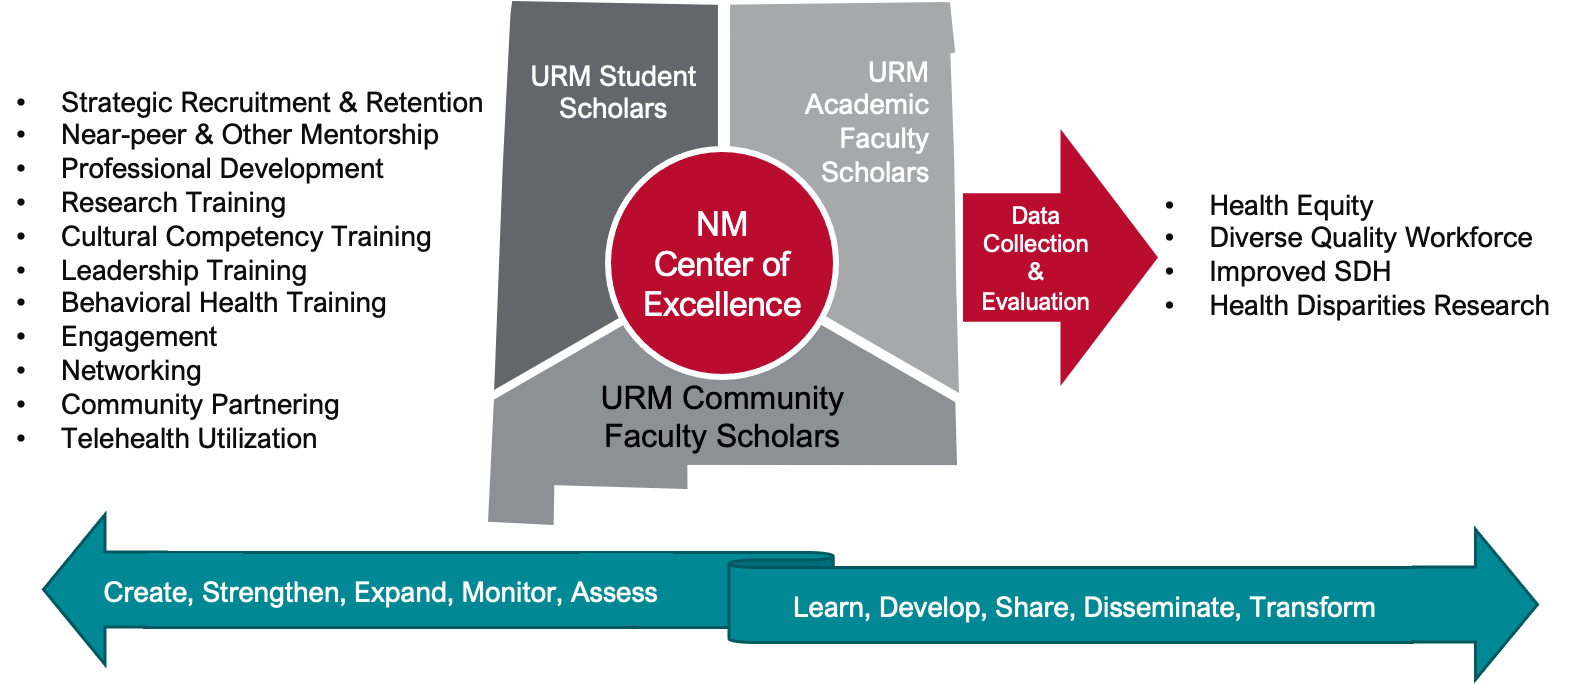 un cuadro que muestra las funciones y relaciones de URM y el Centro de Excelencia de NM